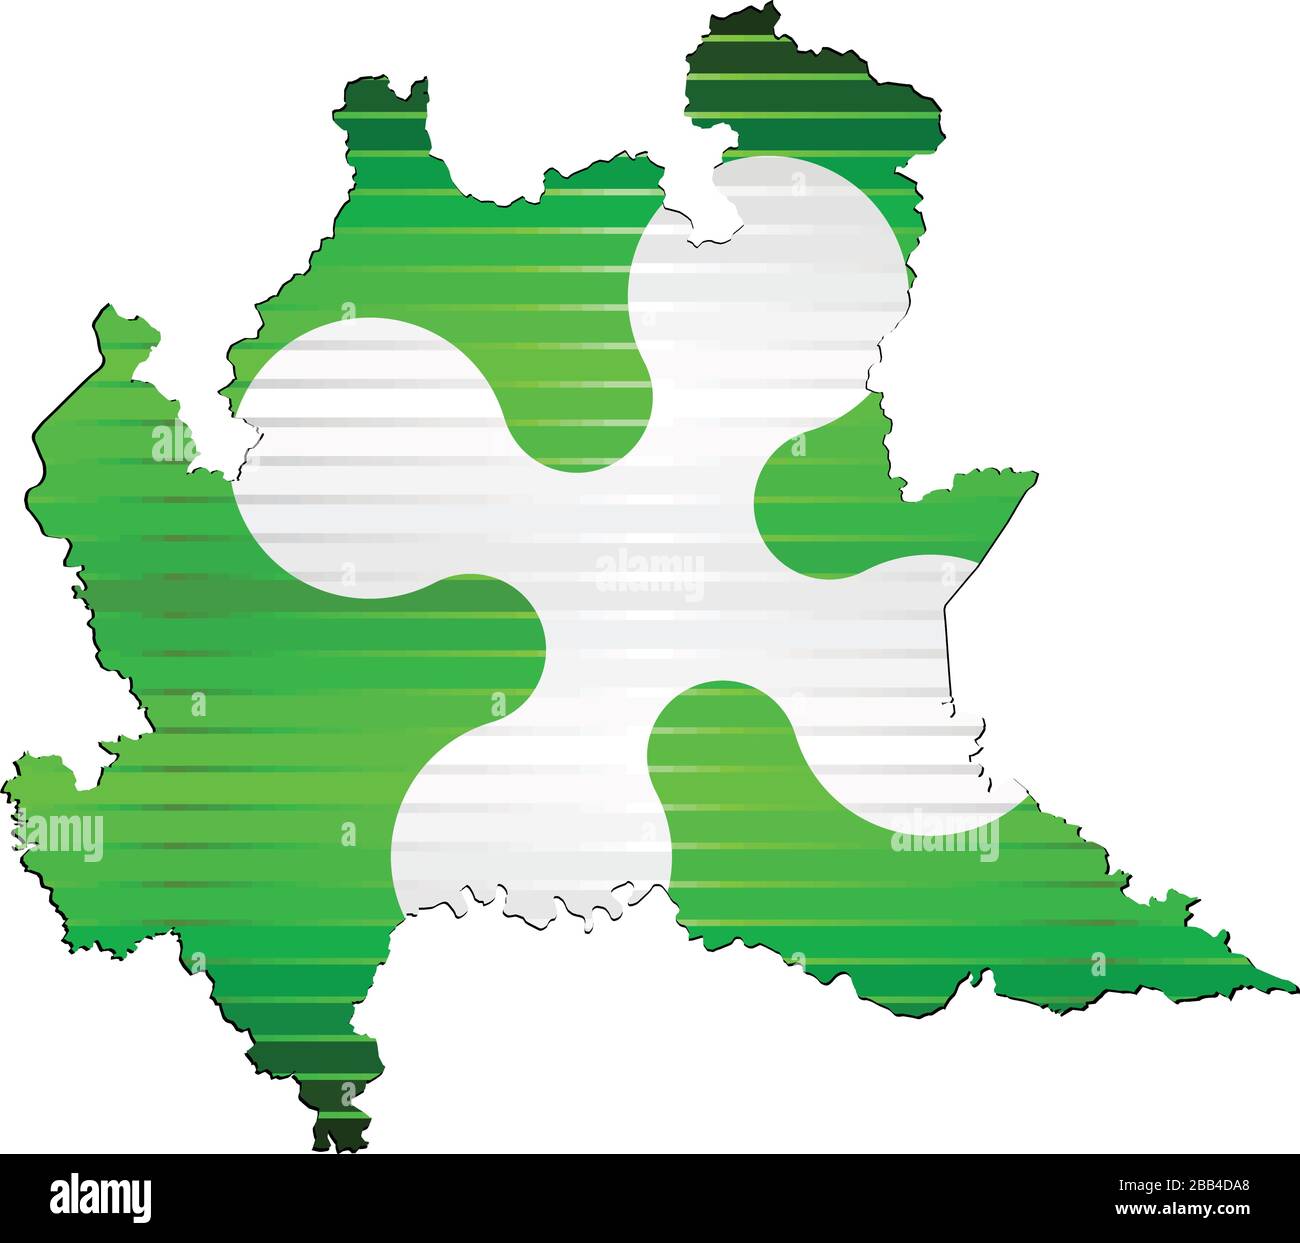 Glänzende Grunge Karte der Lombardei - Abbildung, dreidimensionale Karte der Lombardei Stock Vektor